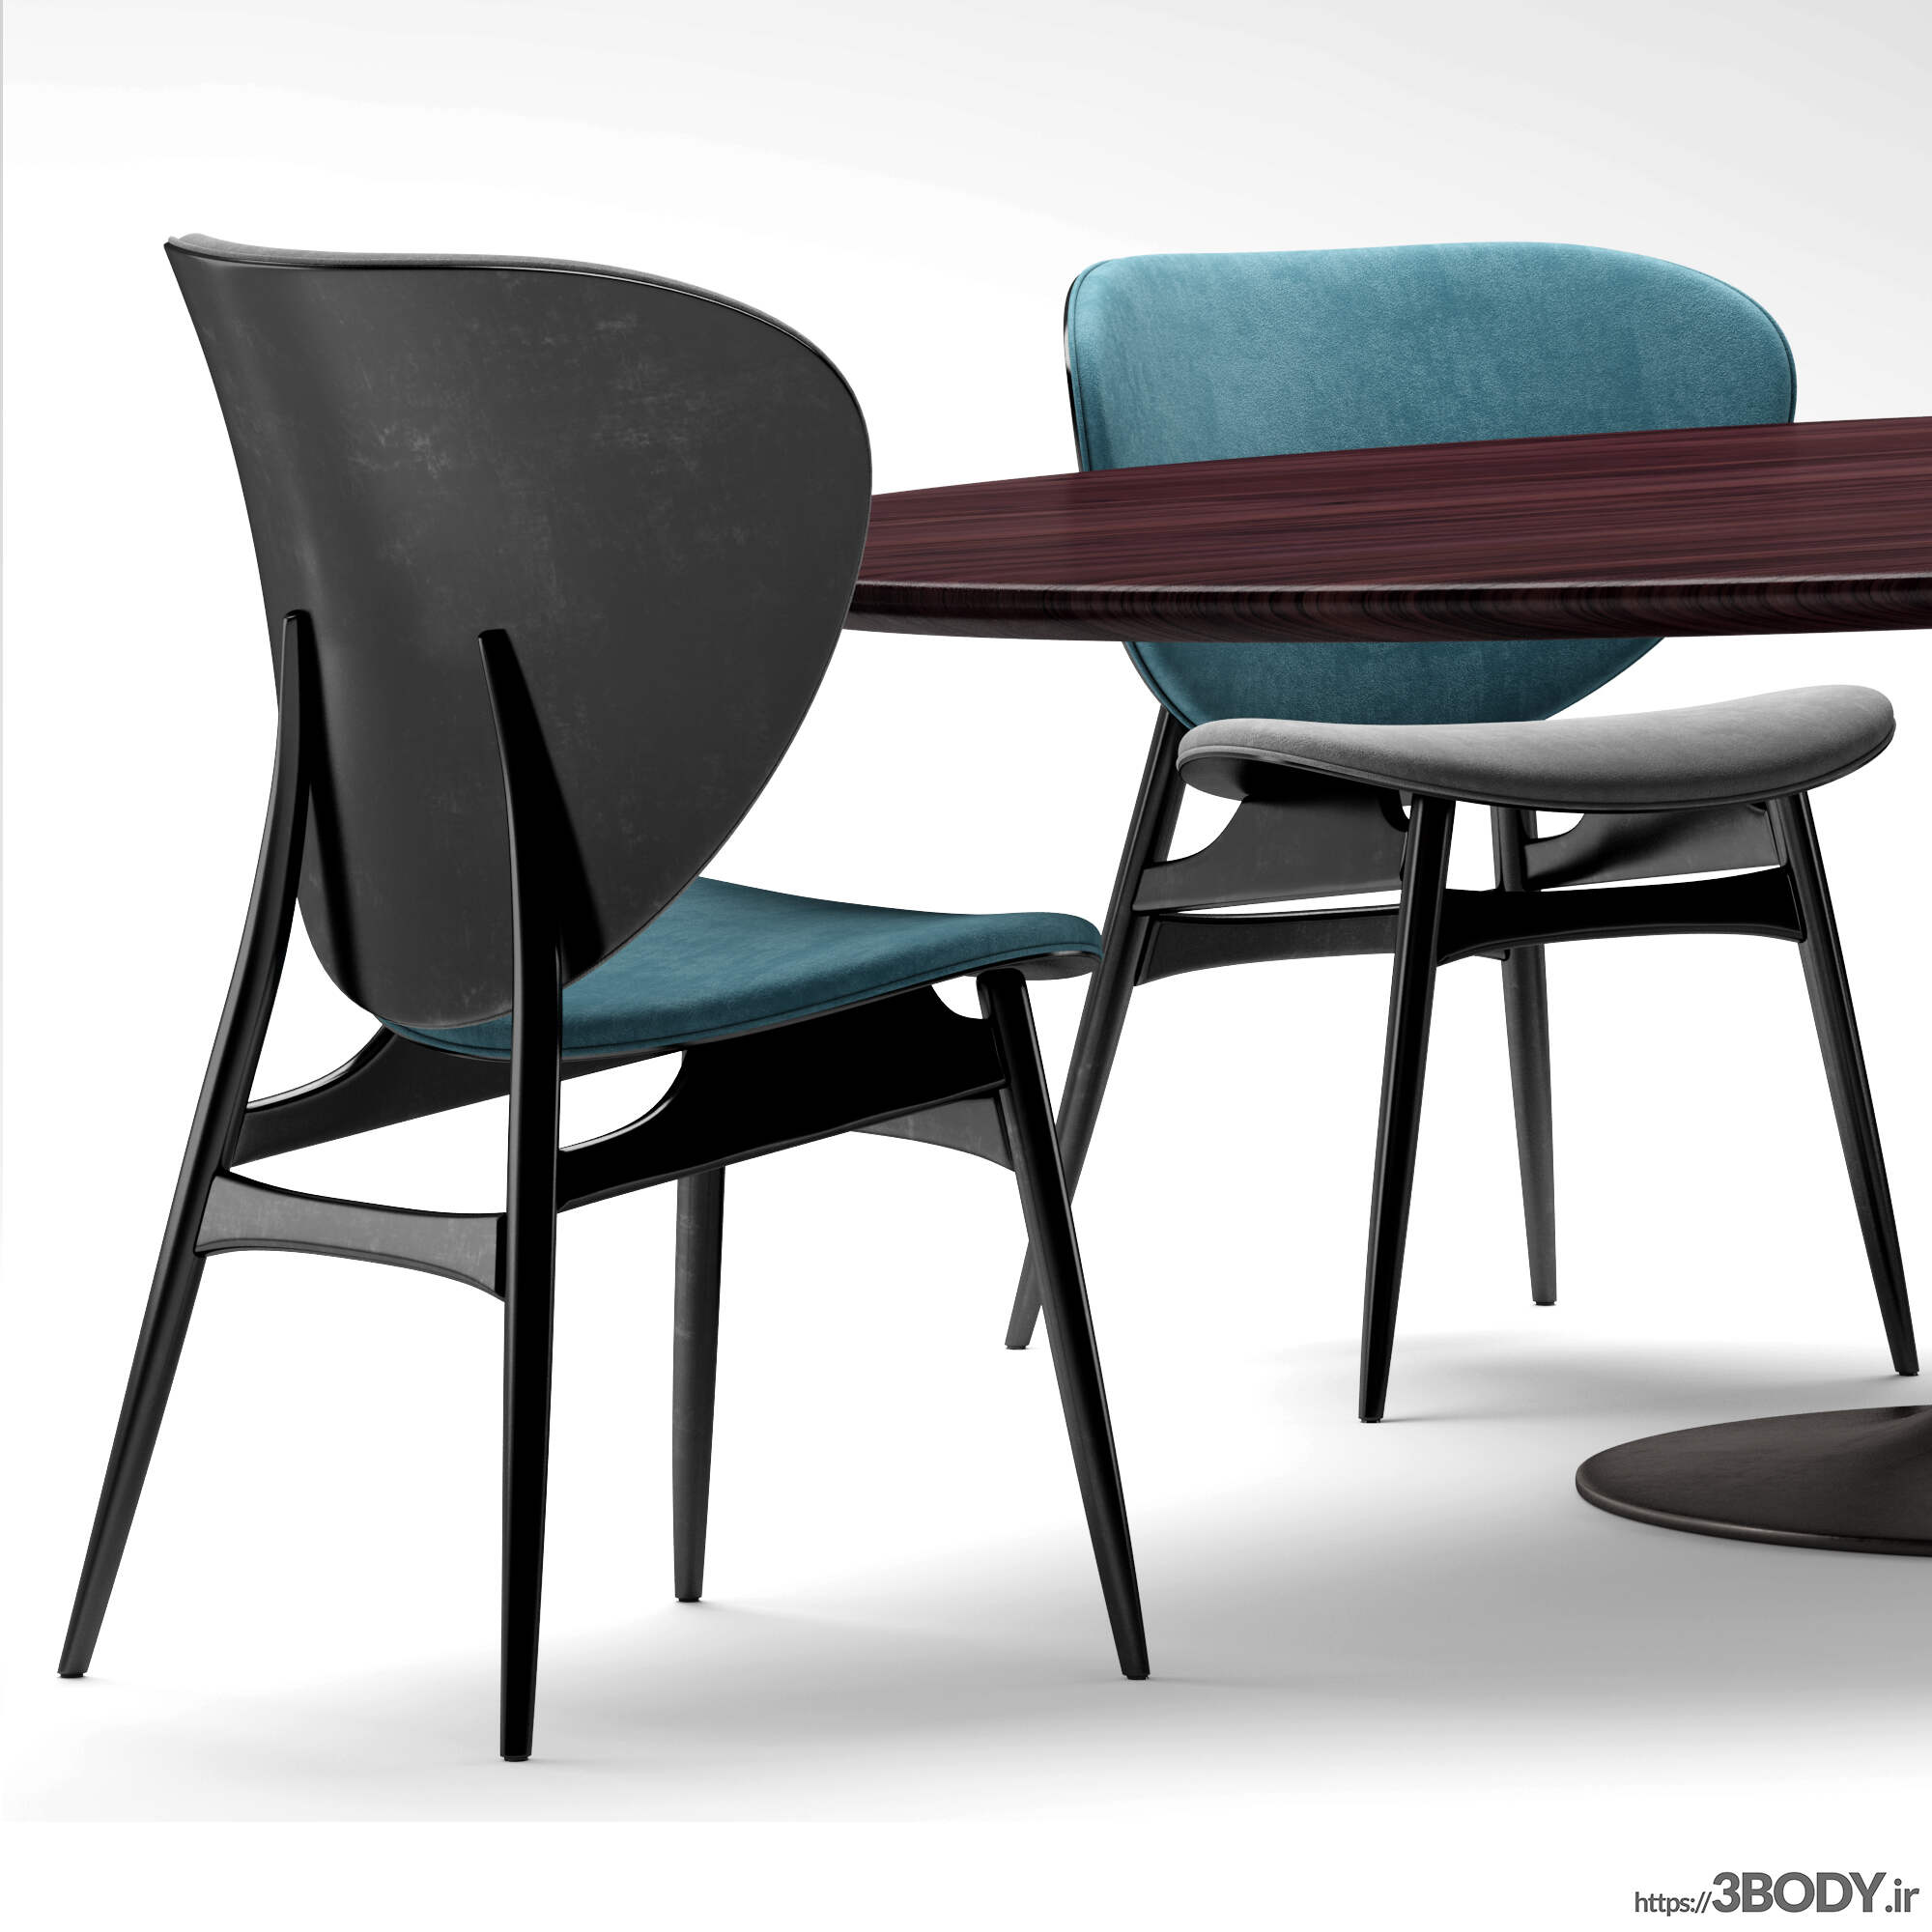 مدل سه بعدی میز و صندلی عکس 2